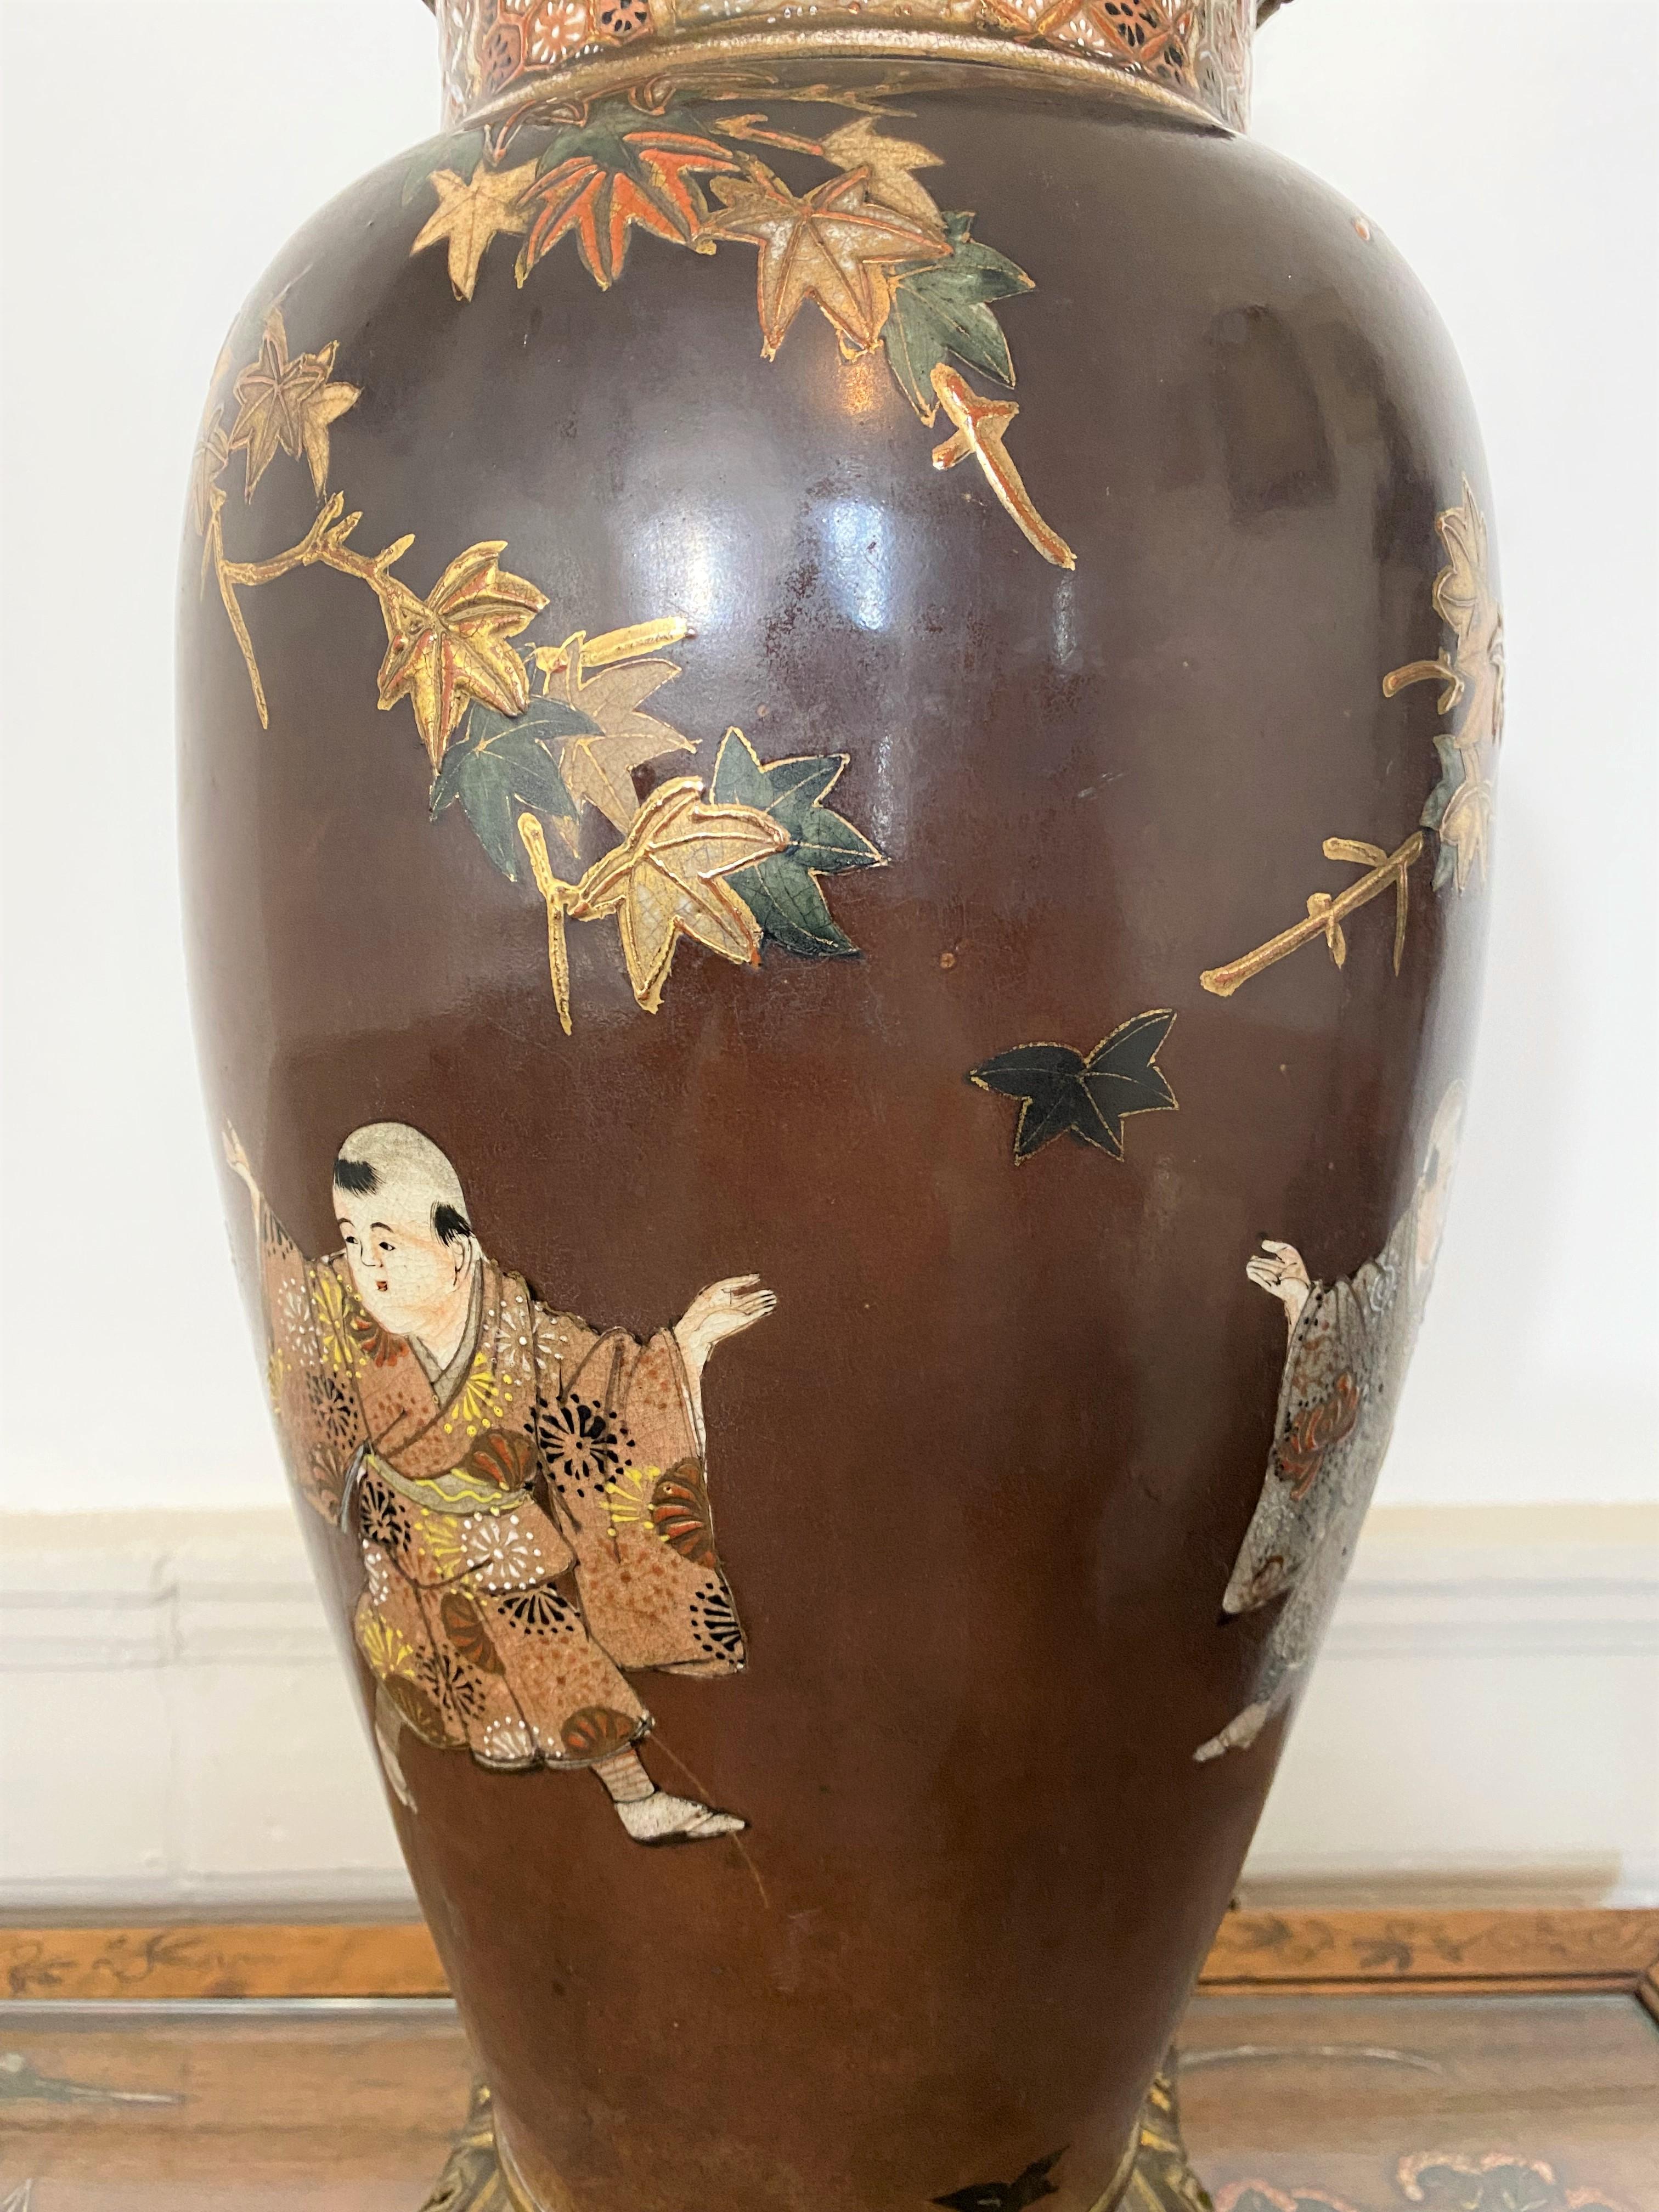 Belle et importante lampe japonaise en porcelaine de Satsuma et bronze doré du 19e siècle. Le corps de la lampe est en porcelaine de Satsuma, le fond est de couleur violette. On y voit apparaître 4 personnages : deux mères vêtues d'habits